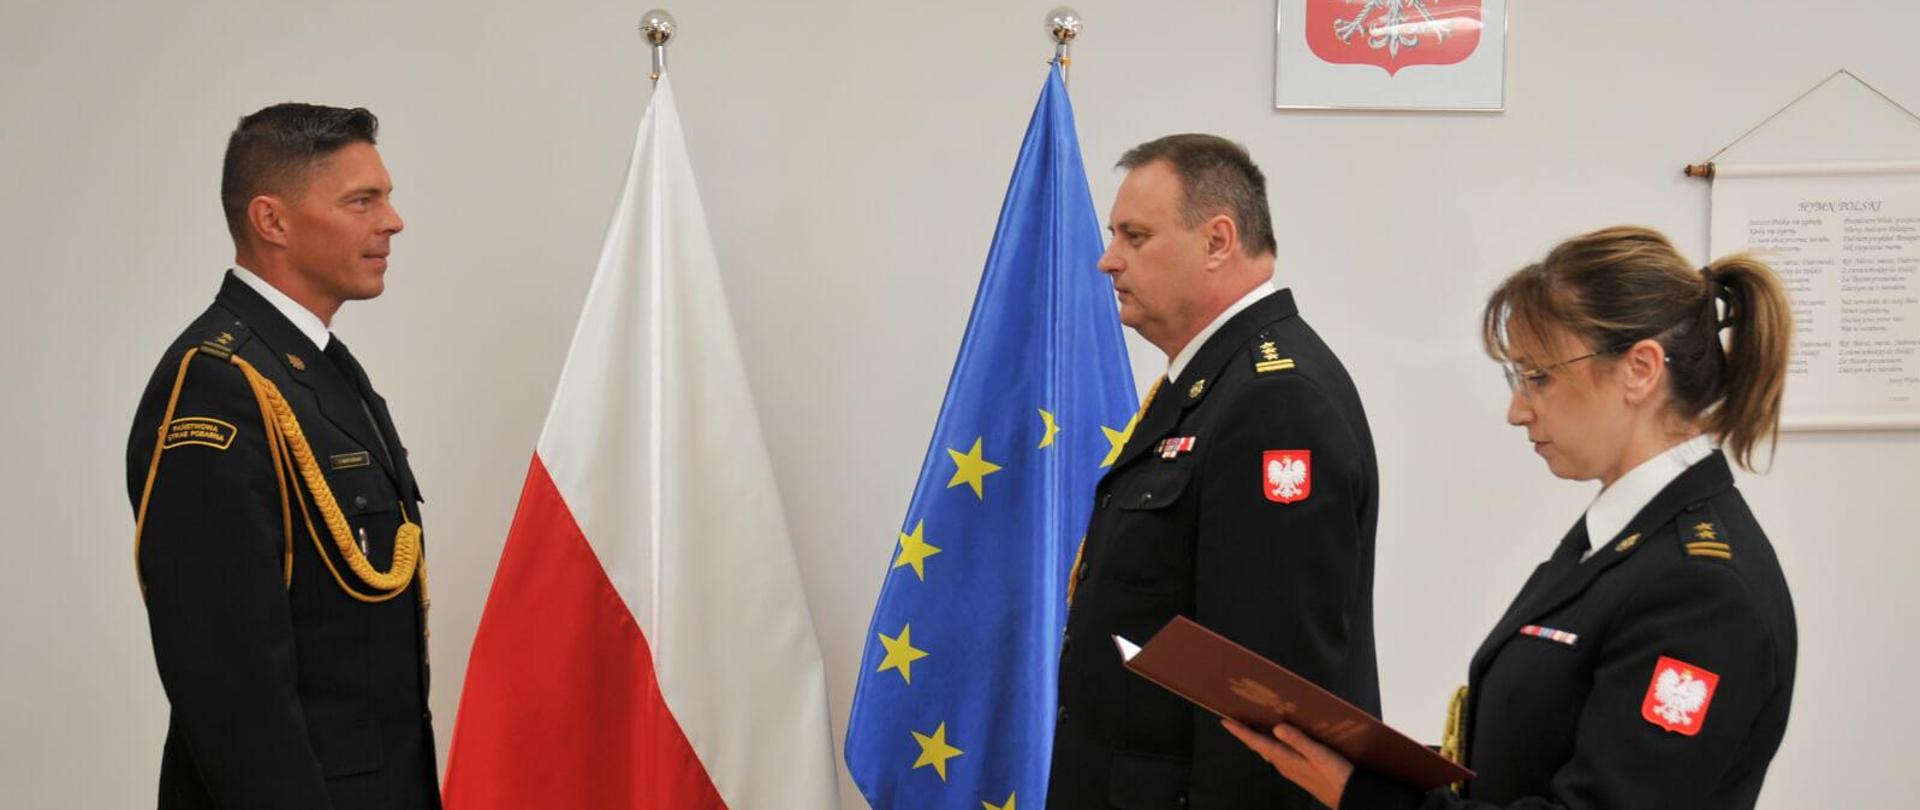 po lewej stoi jednej strażak na przeciwko niego dwoje strażaków, funkcjonariuszka po najbardziej z prawej trzyma w rękach teczkę i odczytuje pismo, za nimi flagi polski i unii europejskiej